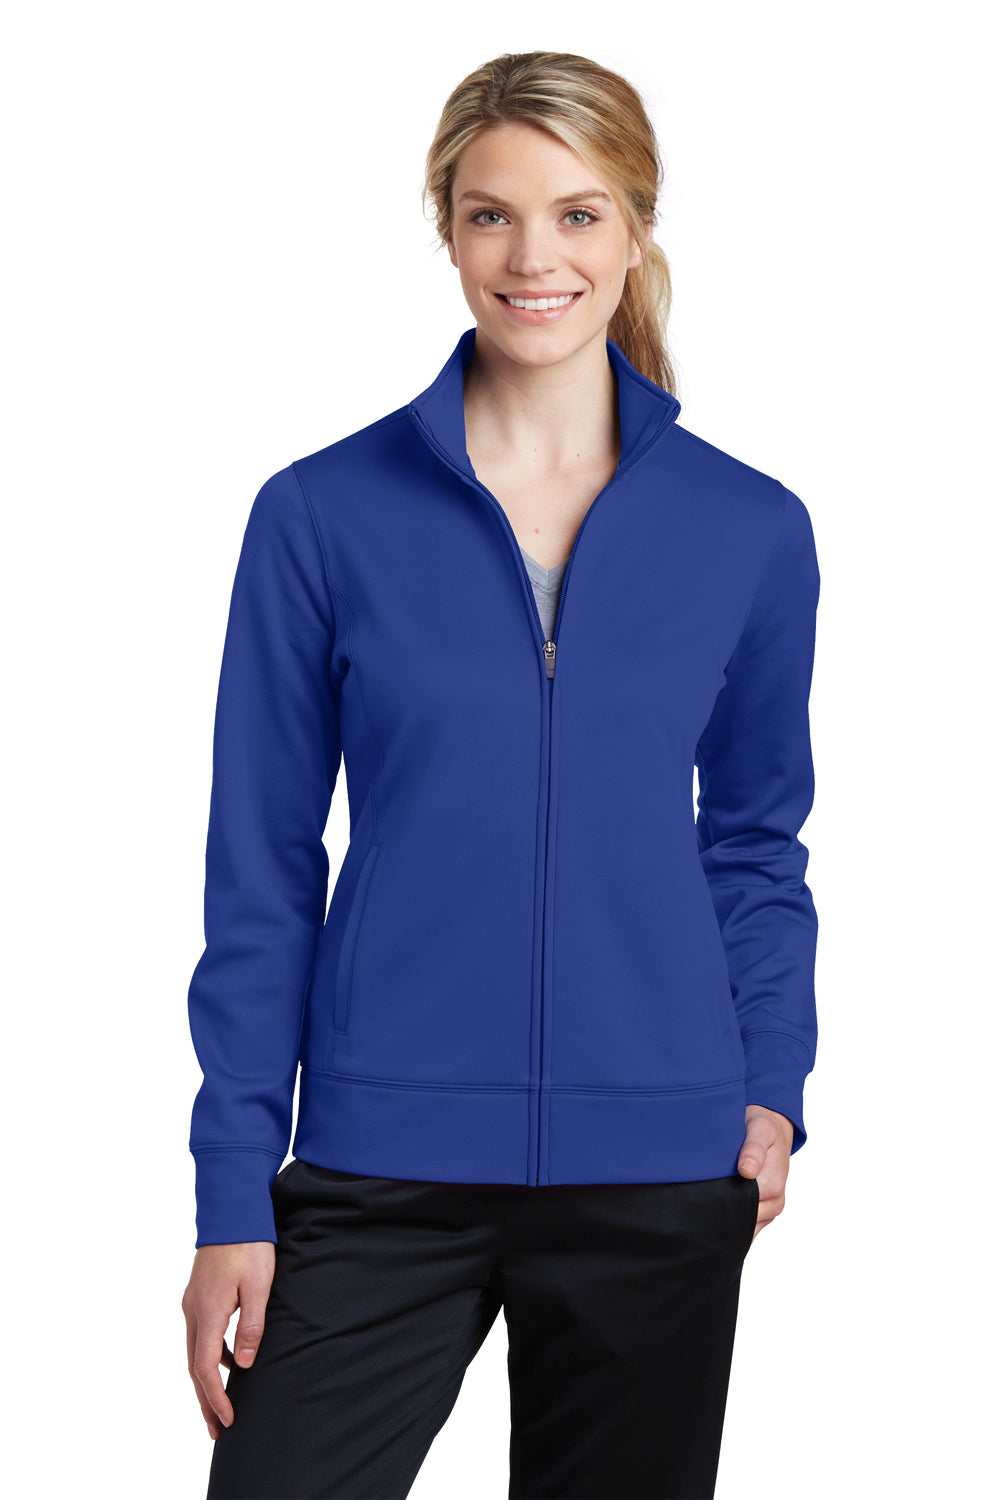 Sport-Tek LST241 Womens Sport-Wick Moisture Wicking Fleece Full Zip Sweatshirt Royal Blue Front